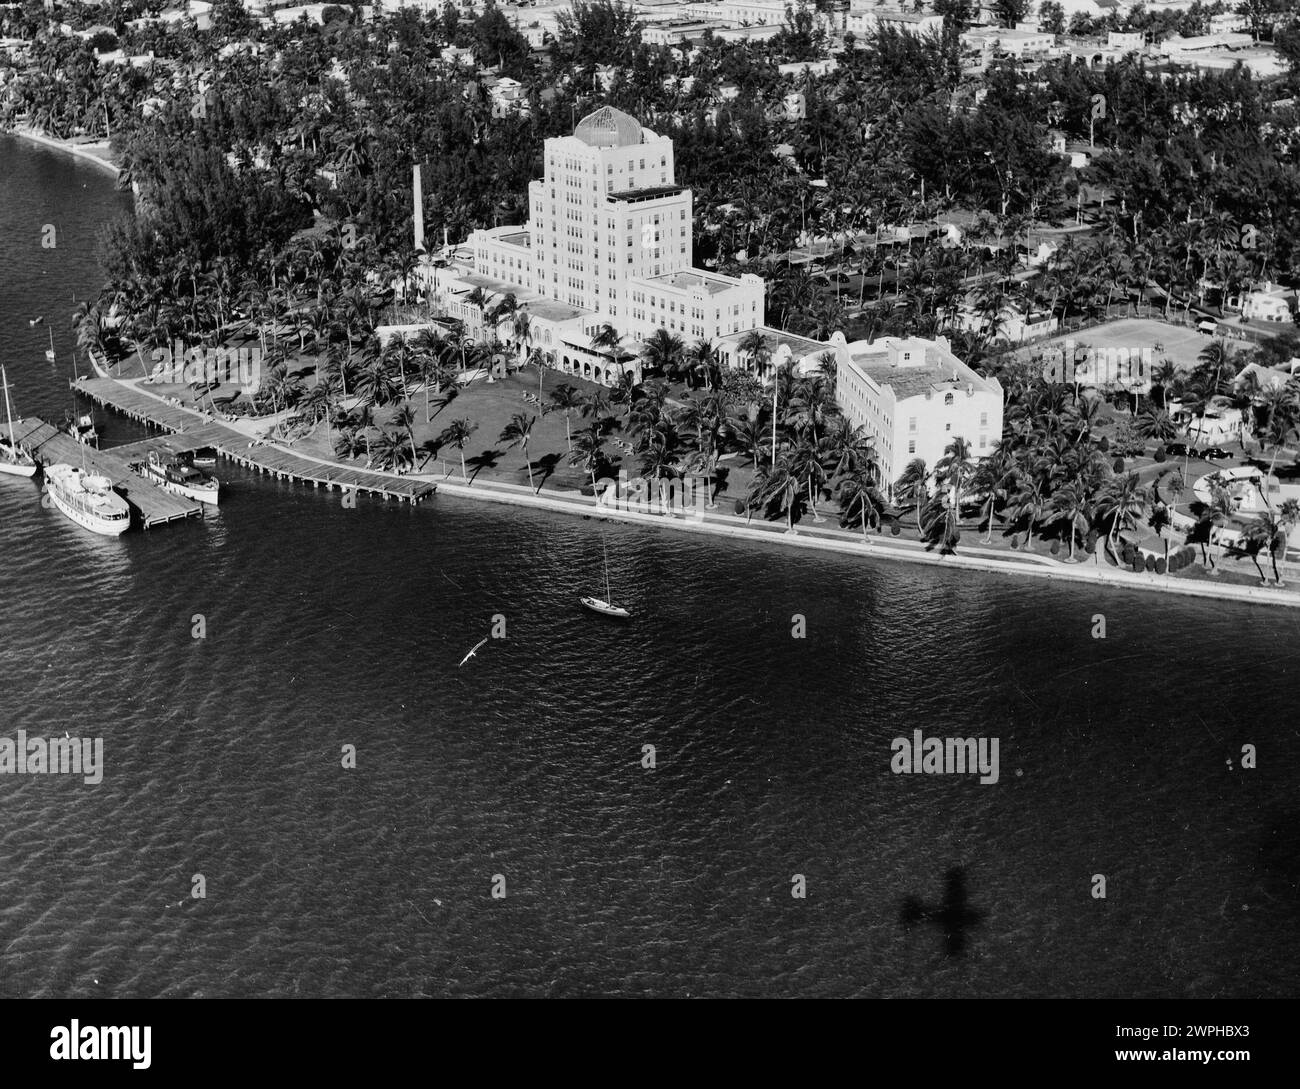 Aerial view of Miami, Florida 1947 Stock Photo